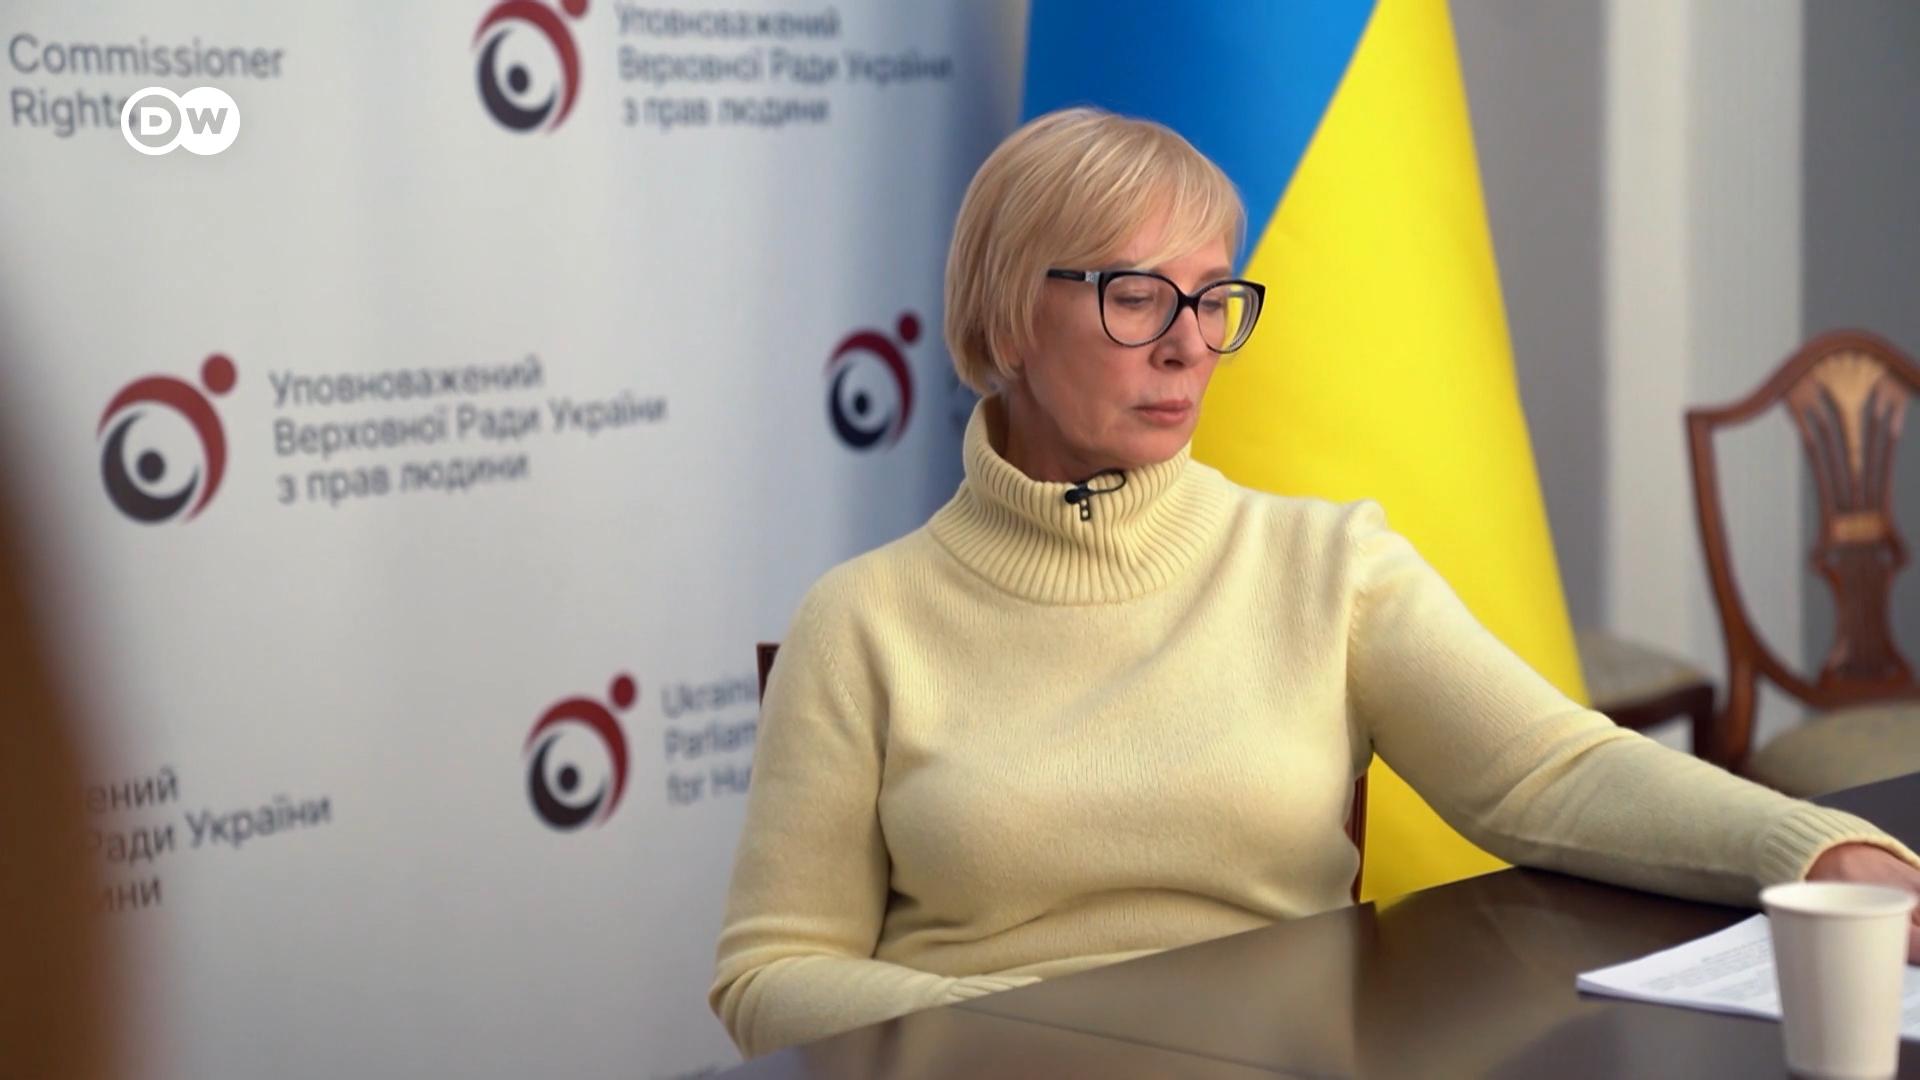 Μαρτυρίες για βιασμούς γυναικών στην Ουκρανία από Ρώσους στρατιώτες προκαλούν σοκ #Εuropeo